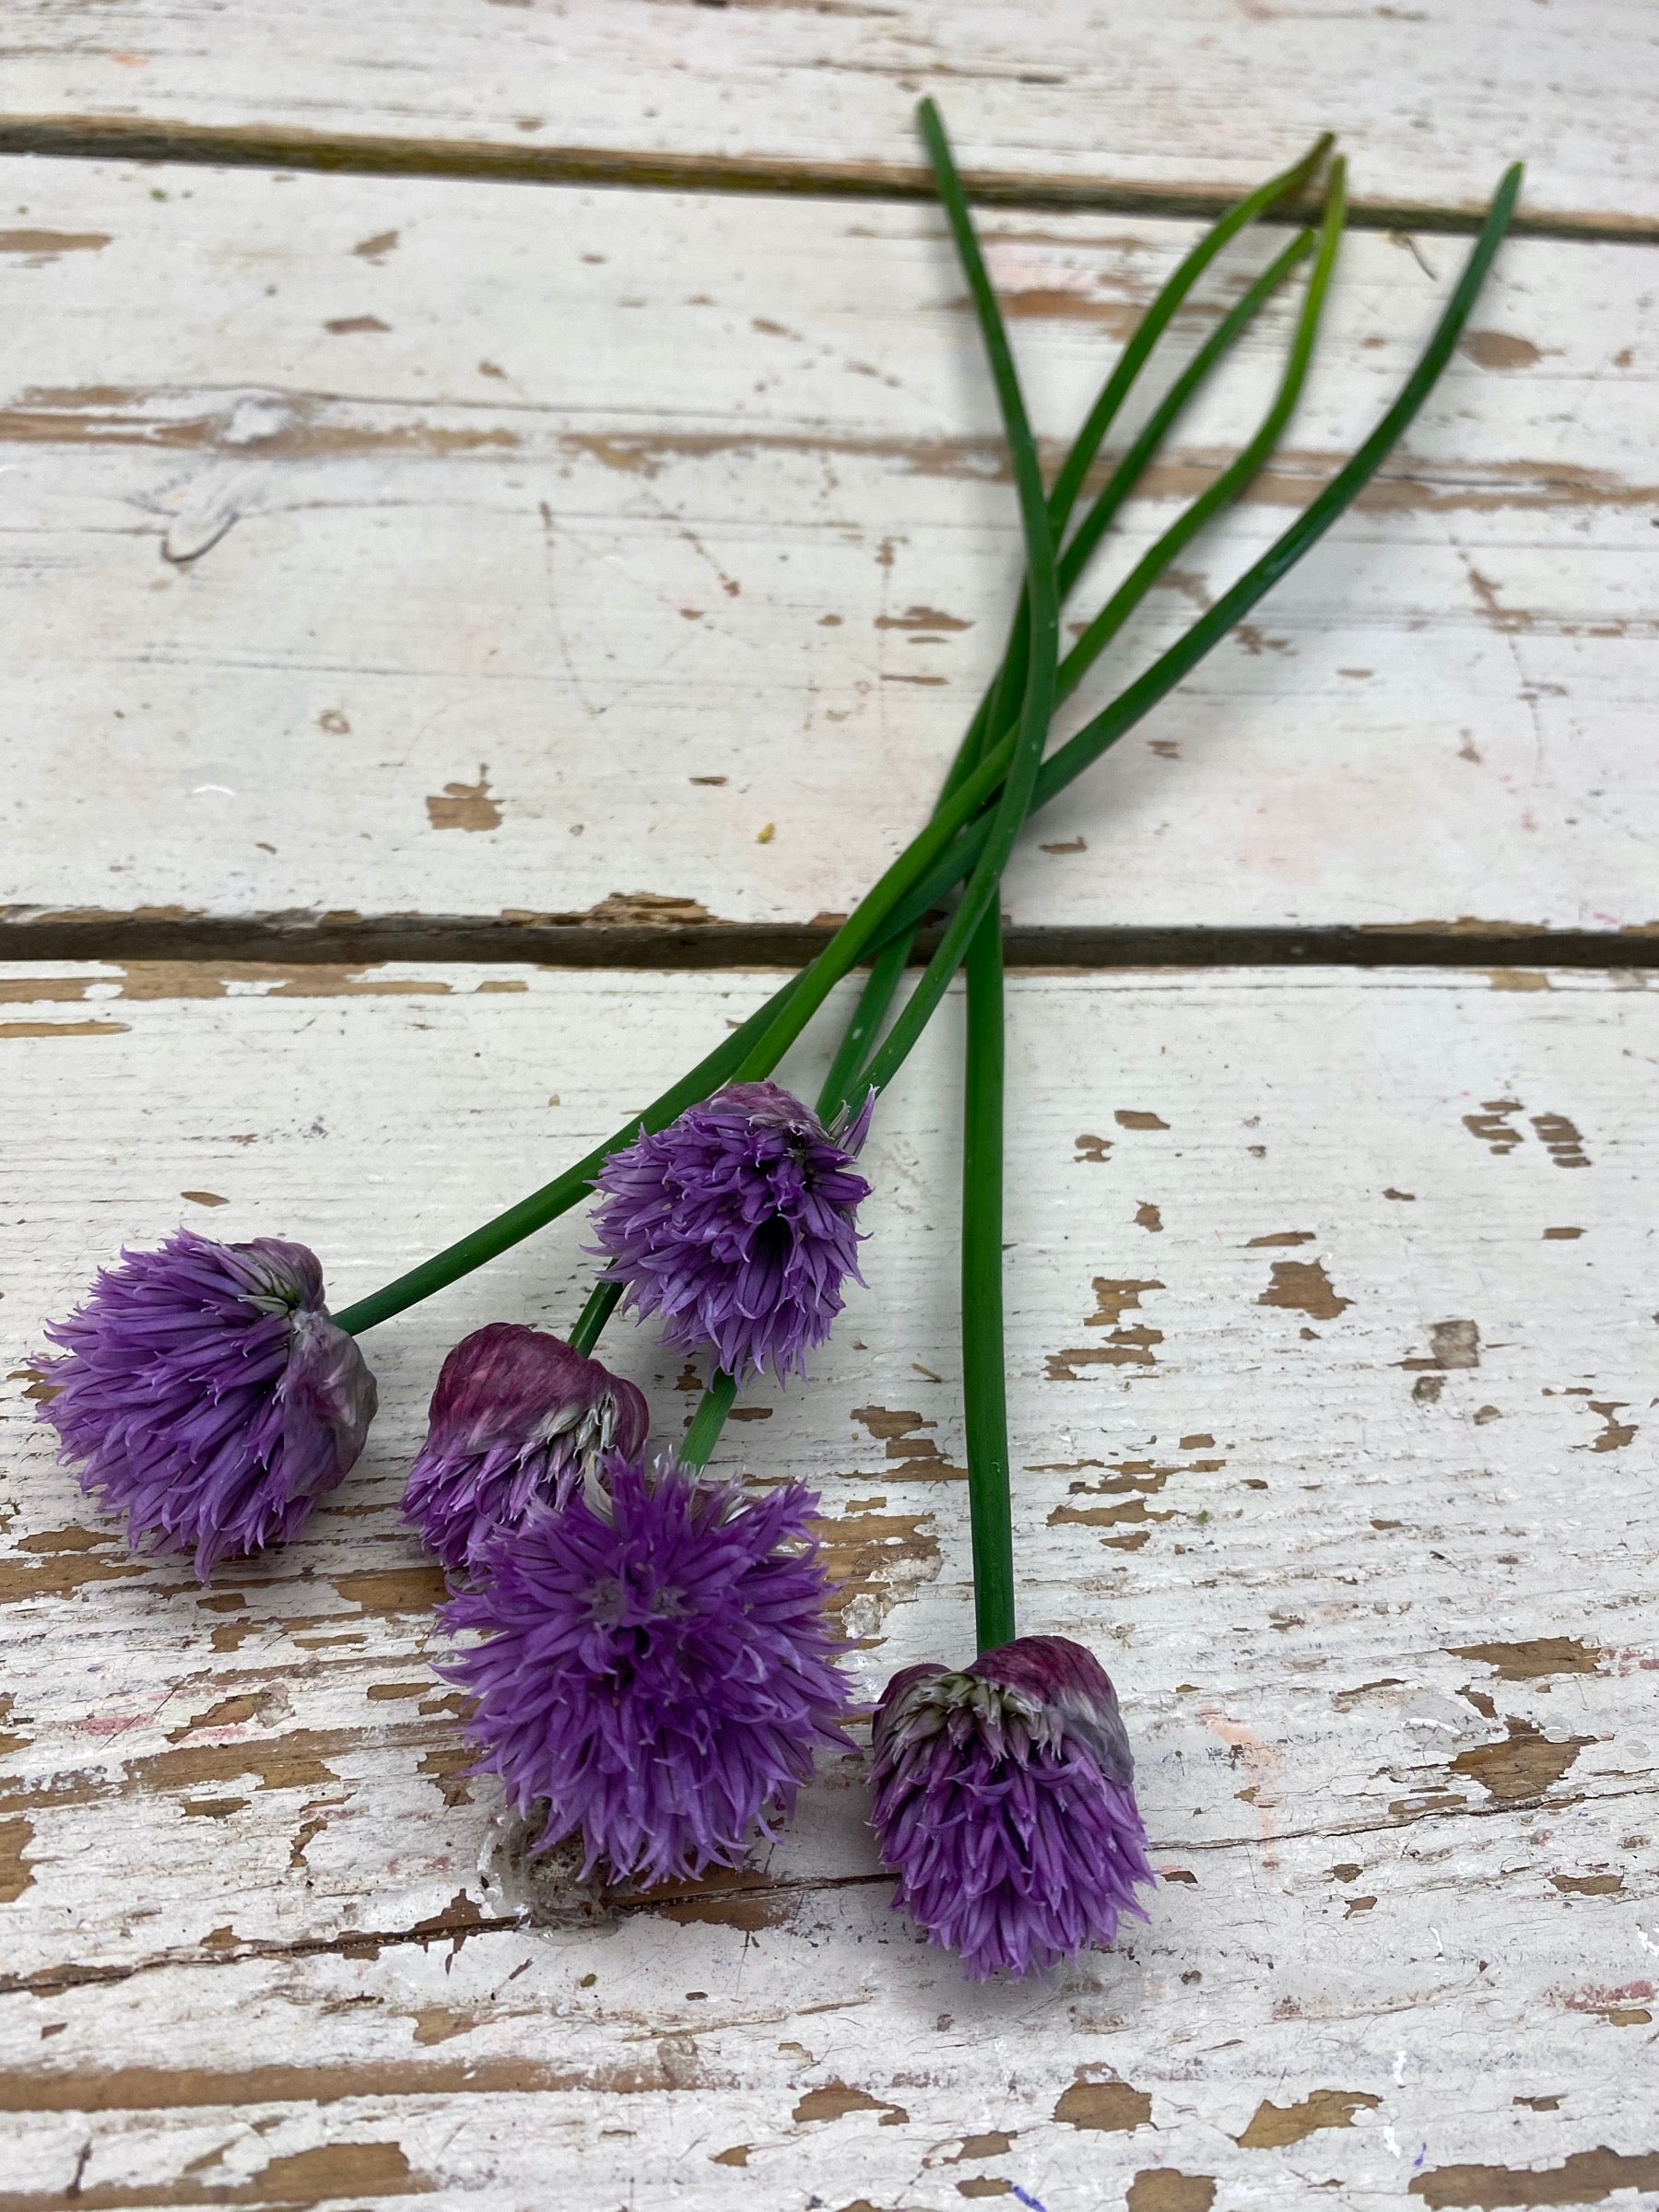 Bieslook bloem, Allium schoenoprasum paars, per stuk